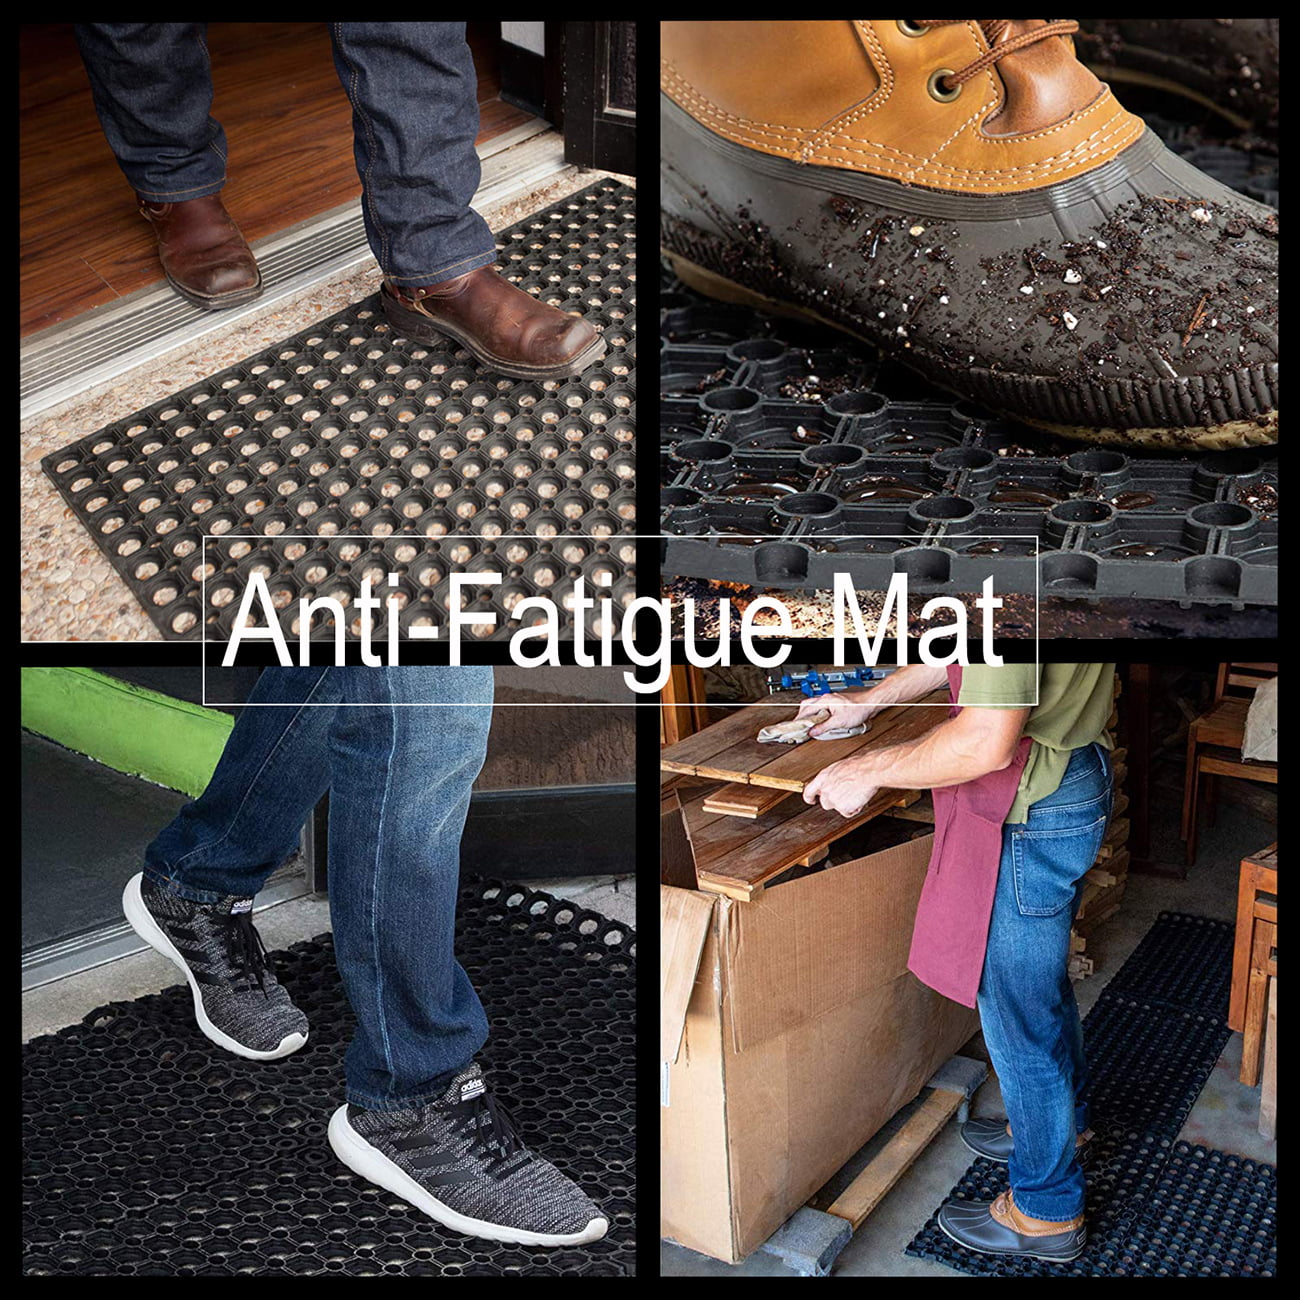 Evideco Outdoor Interlocking Rubber Floor Mat Anti-Fatigue Door Mat 24Lx16W Black